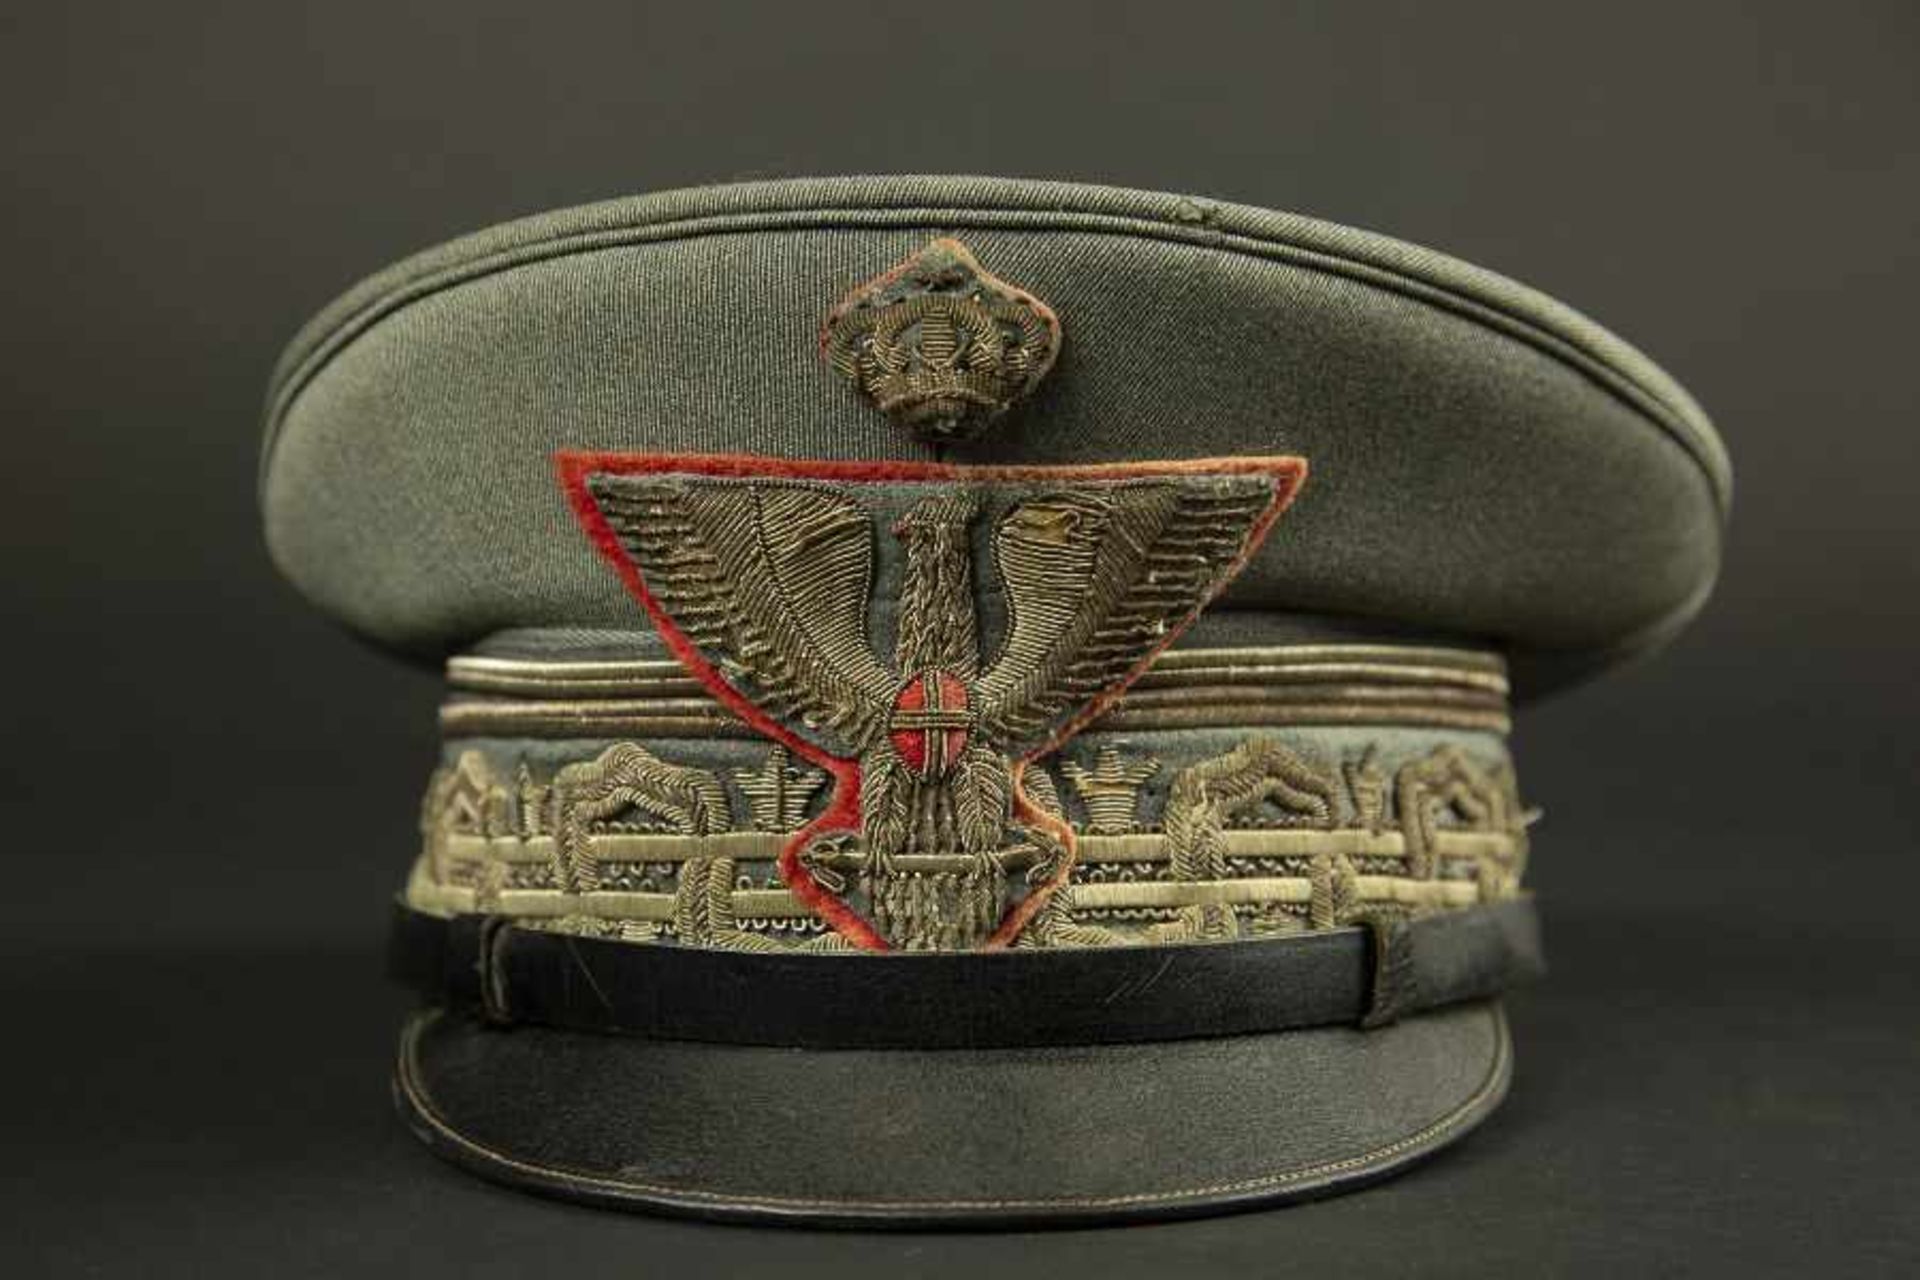 Casquette de général de division italien en tenue de serviceEn drap grigio verde, comportant les